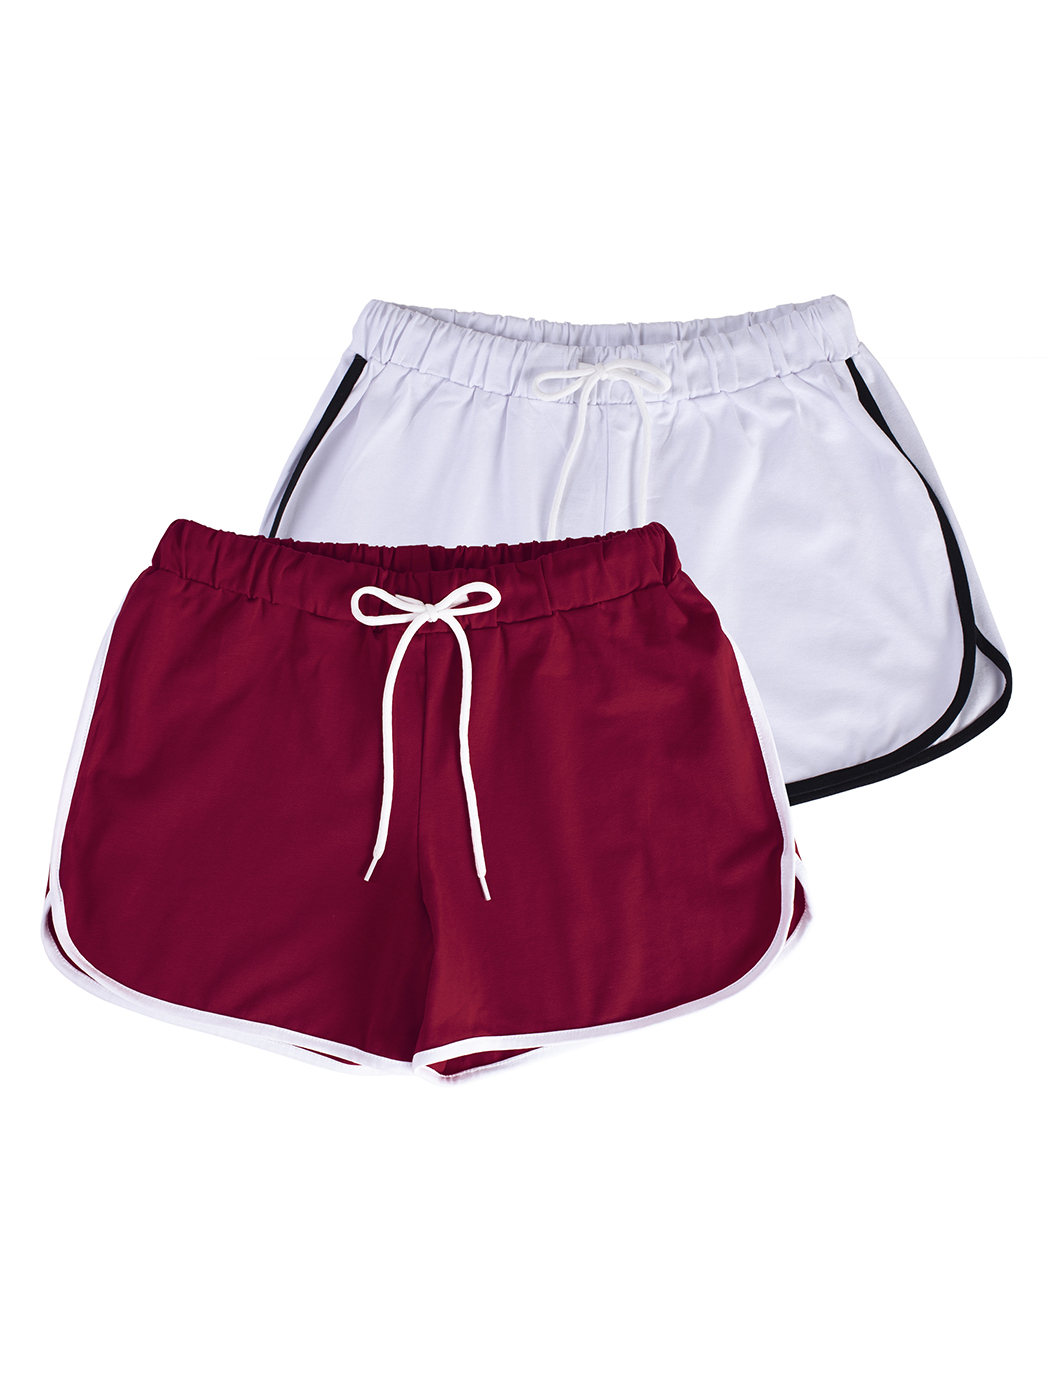 Cпортивные шорты женские Lunarable ksrt002-2_ красные L